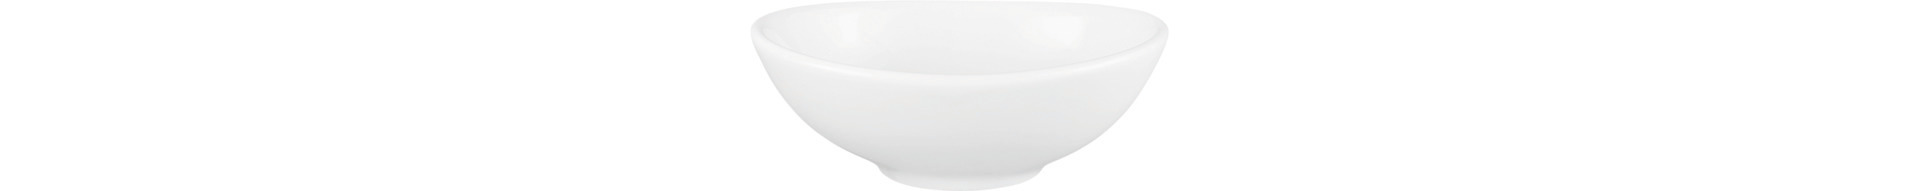 Bowl oval 85 x 65 mm / 0,05 l weiß uni (M5307)